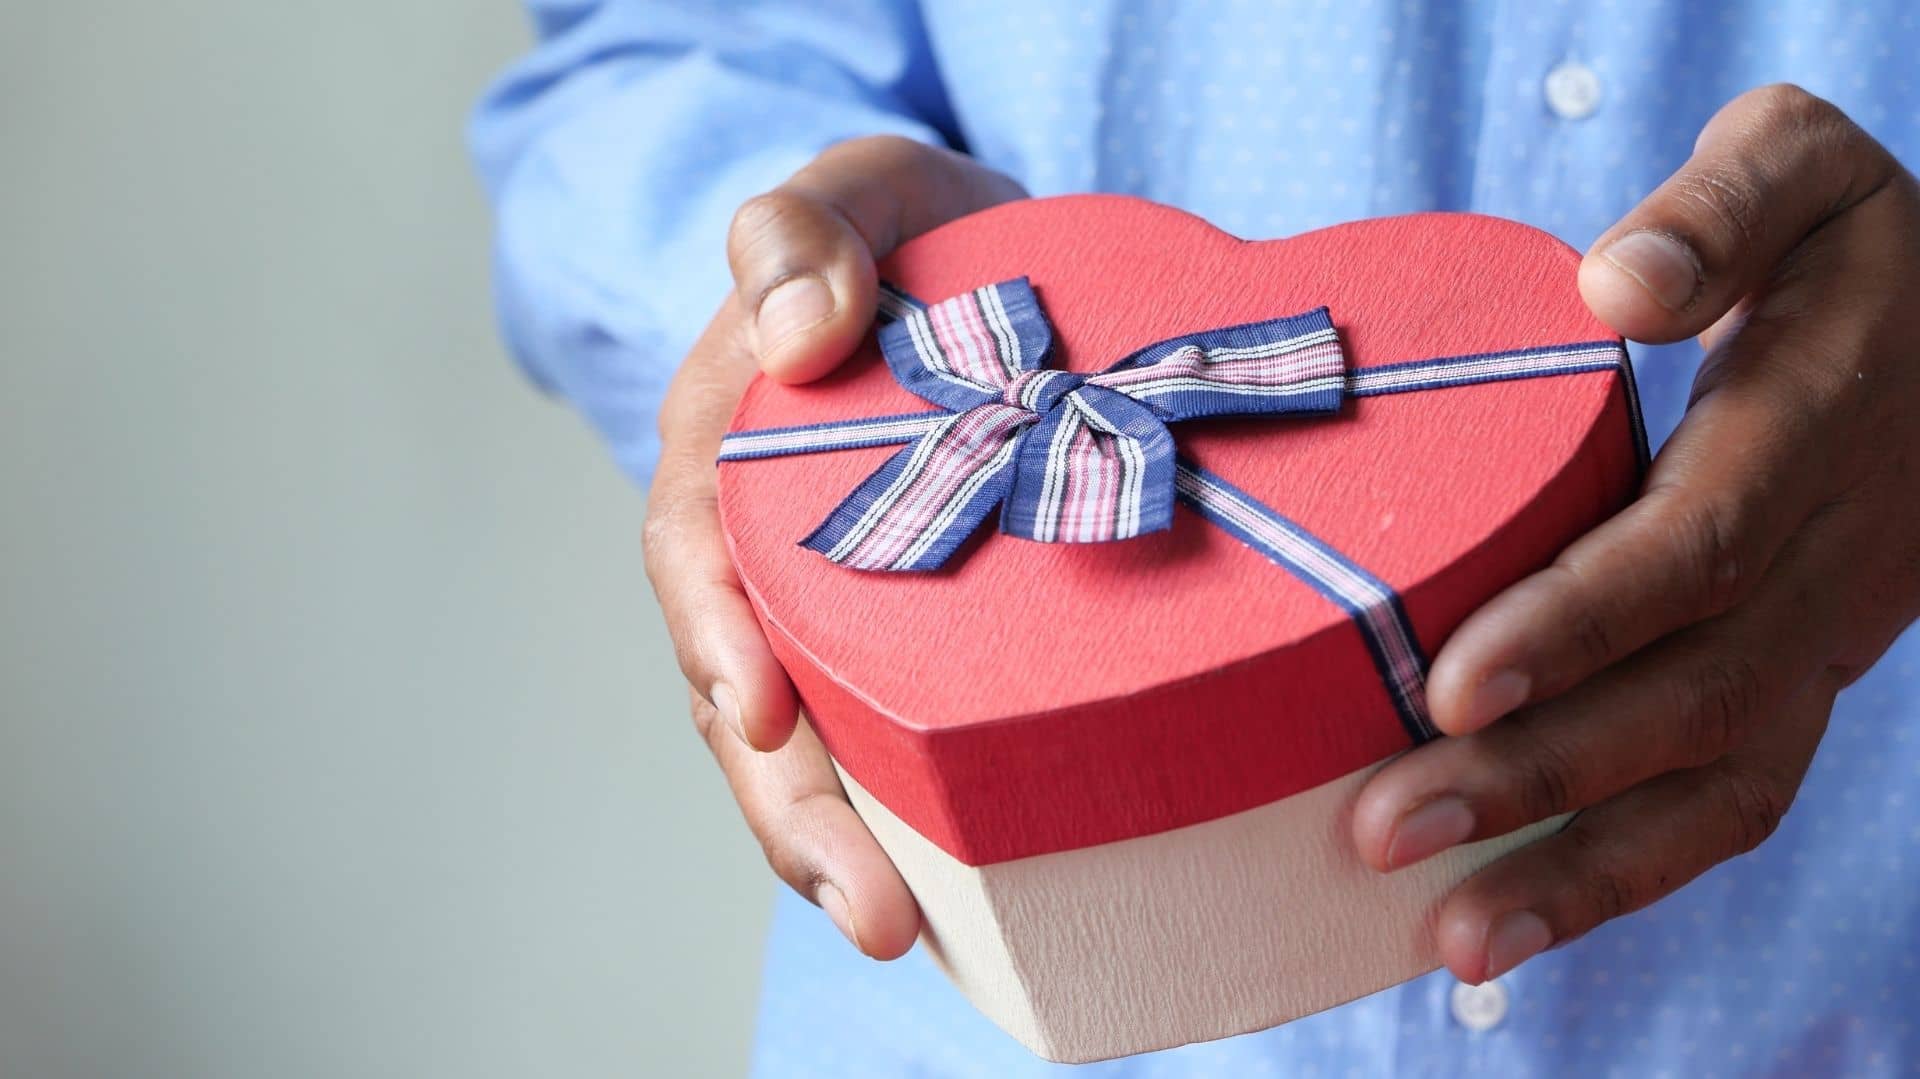 Desmañado Ministerio Órgano digestivo 30 regalos de aniversario para regalar y vender desde casa